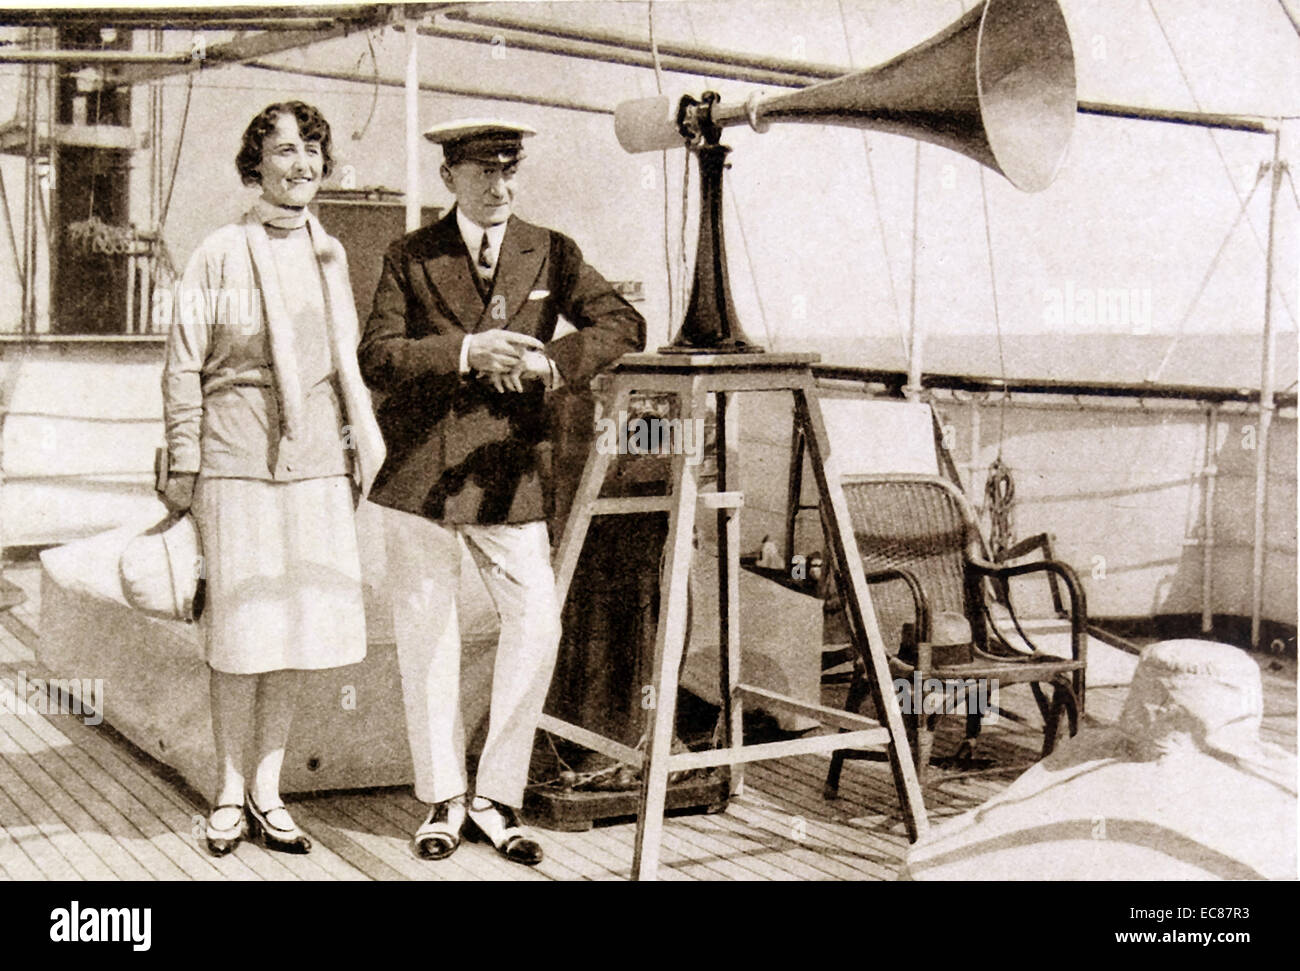 Photographie de Guglielmo Marconi, 1er marquis de Marconi (1874-1937) ingénieur en électricité et inventeur italien avec son épouse à bord de son yatch "Elettra'. Datée 1925 Banque D'Images